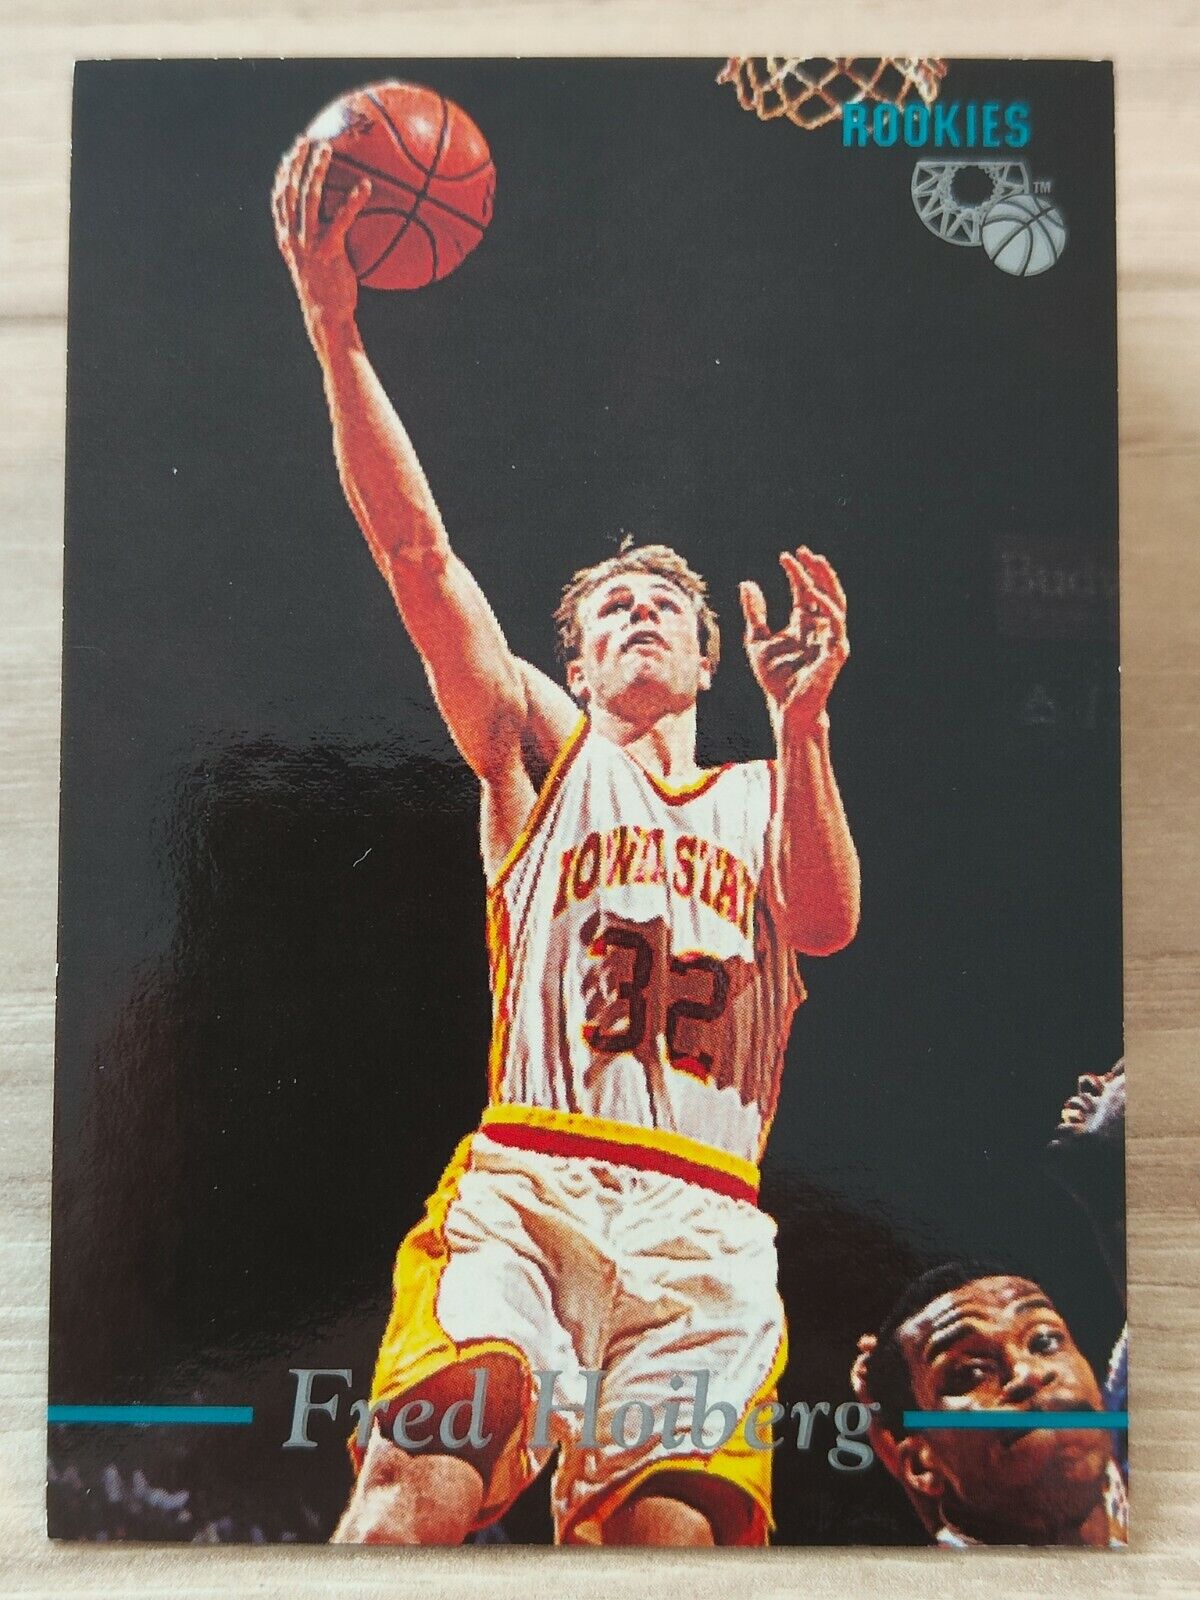 1995 N48 Classic Basketball NBA Rookies RC - Fred Hoiberg #48